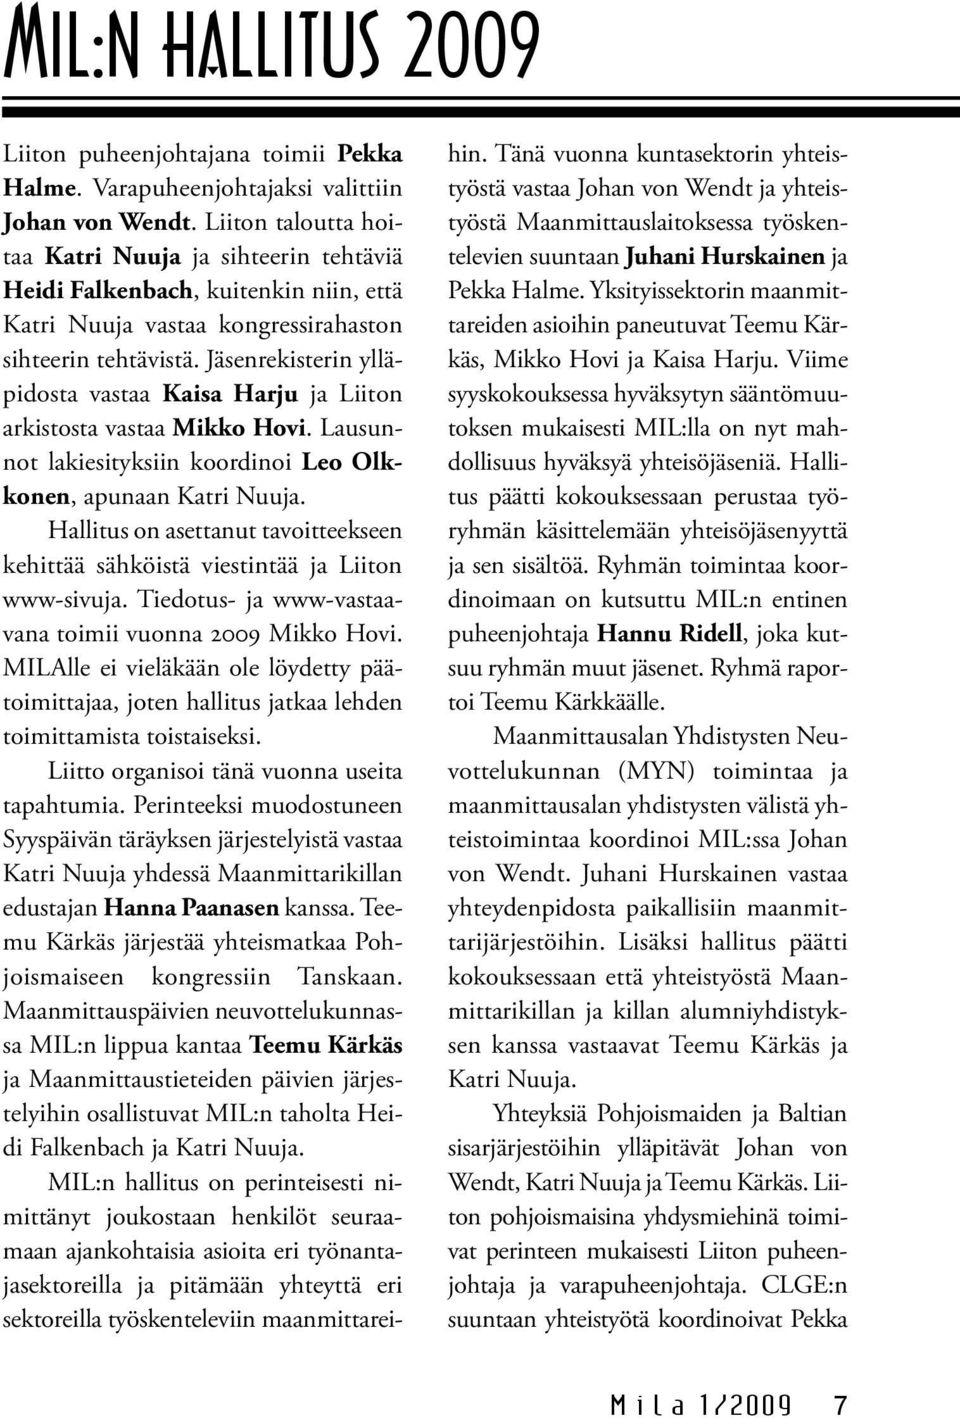 Jäsenrekisterin ylläpidosta vastaa Kaisa Harju ja Liiton arkistosta vastaa Mikko Hovi. Lausunnot lakiesityksiin koordinoi Leo Olkkonen, apunaan Katri Nuuja.